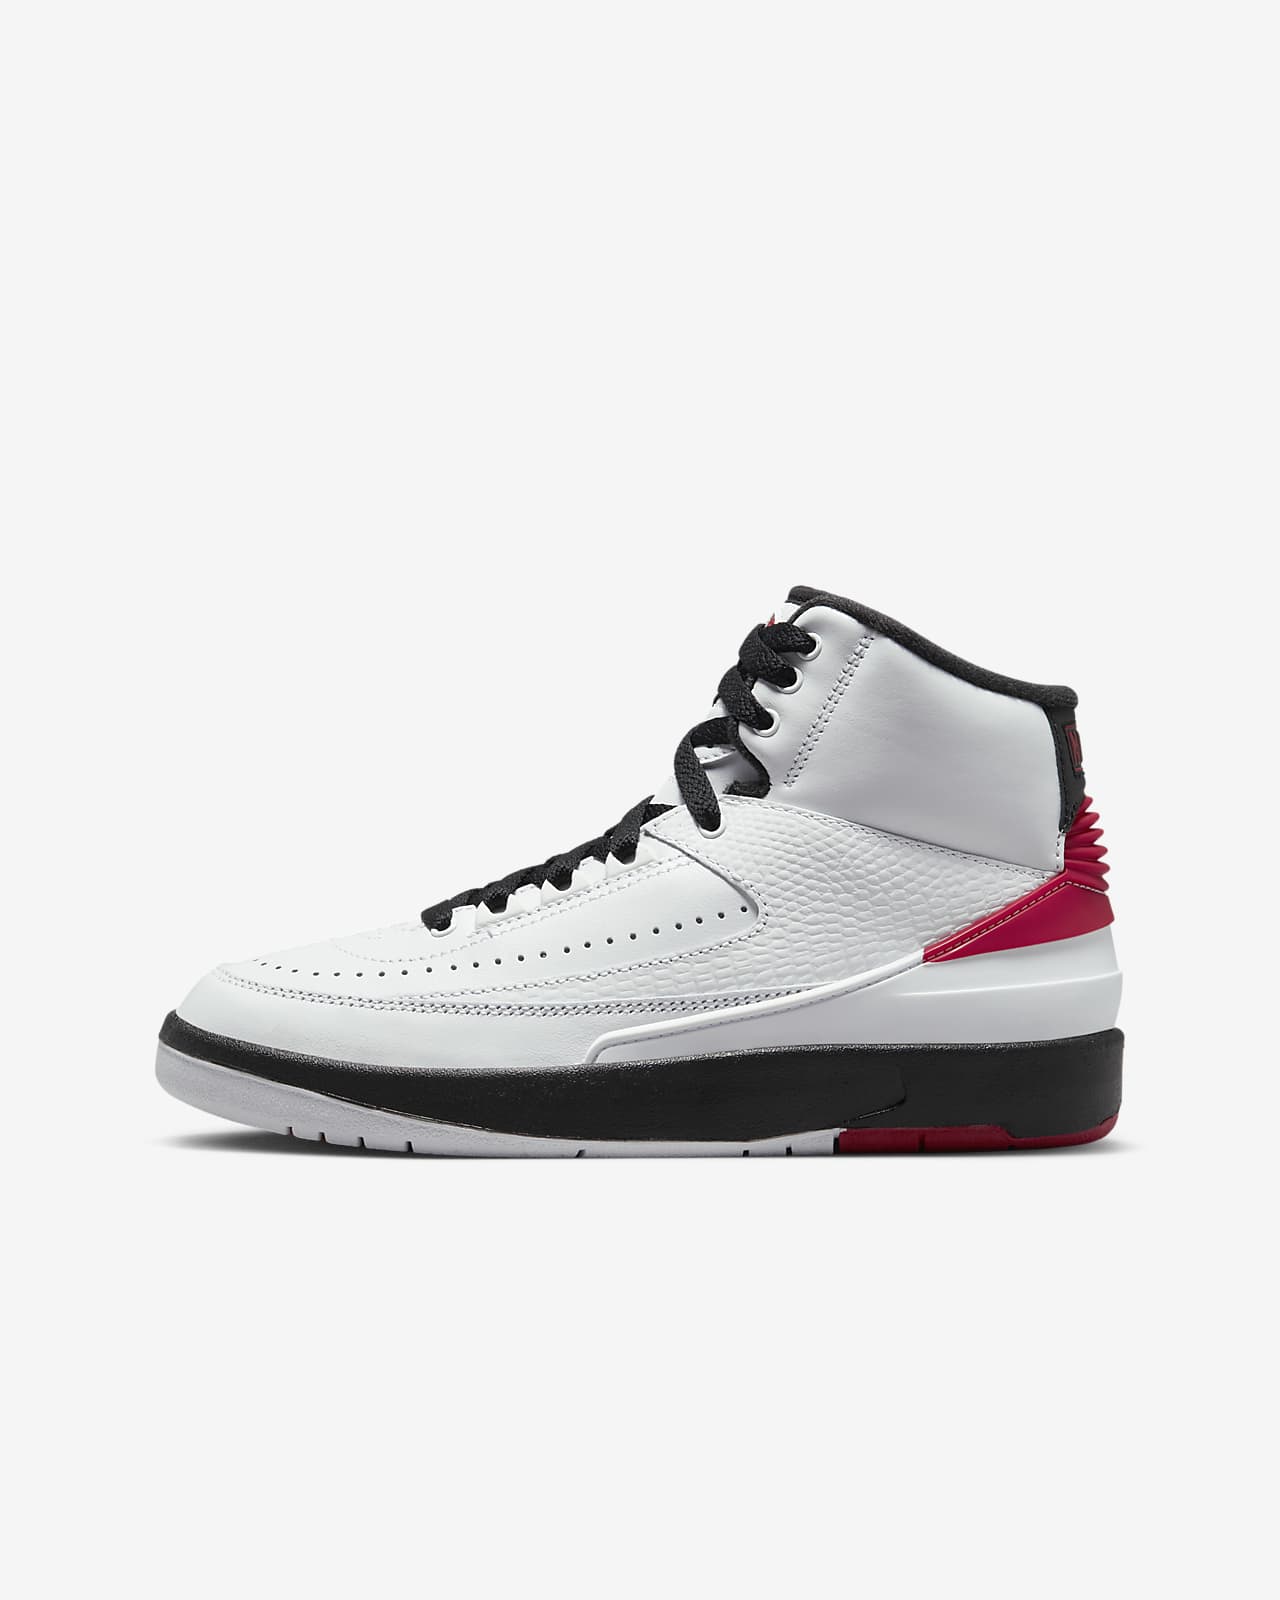 Air Jordan Retro Zapatillas - Niño/a. Nike